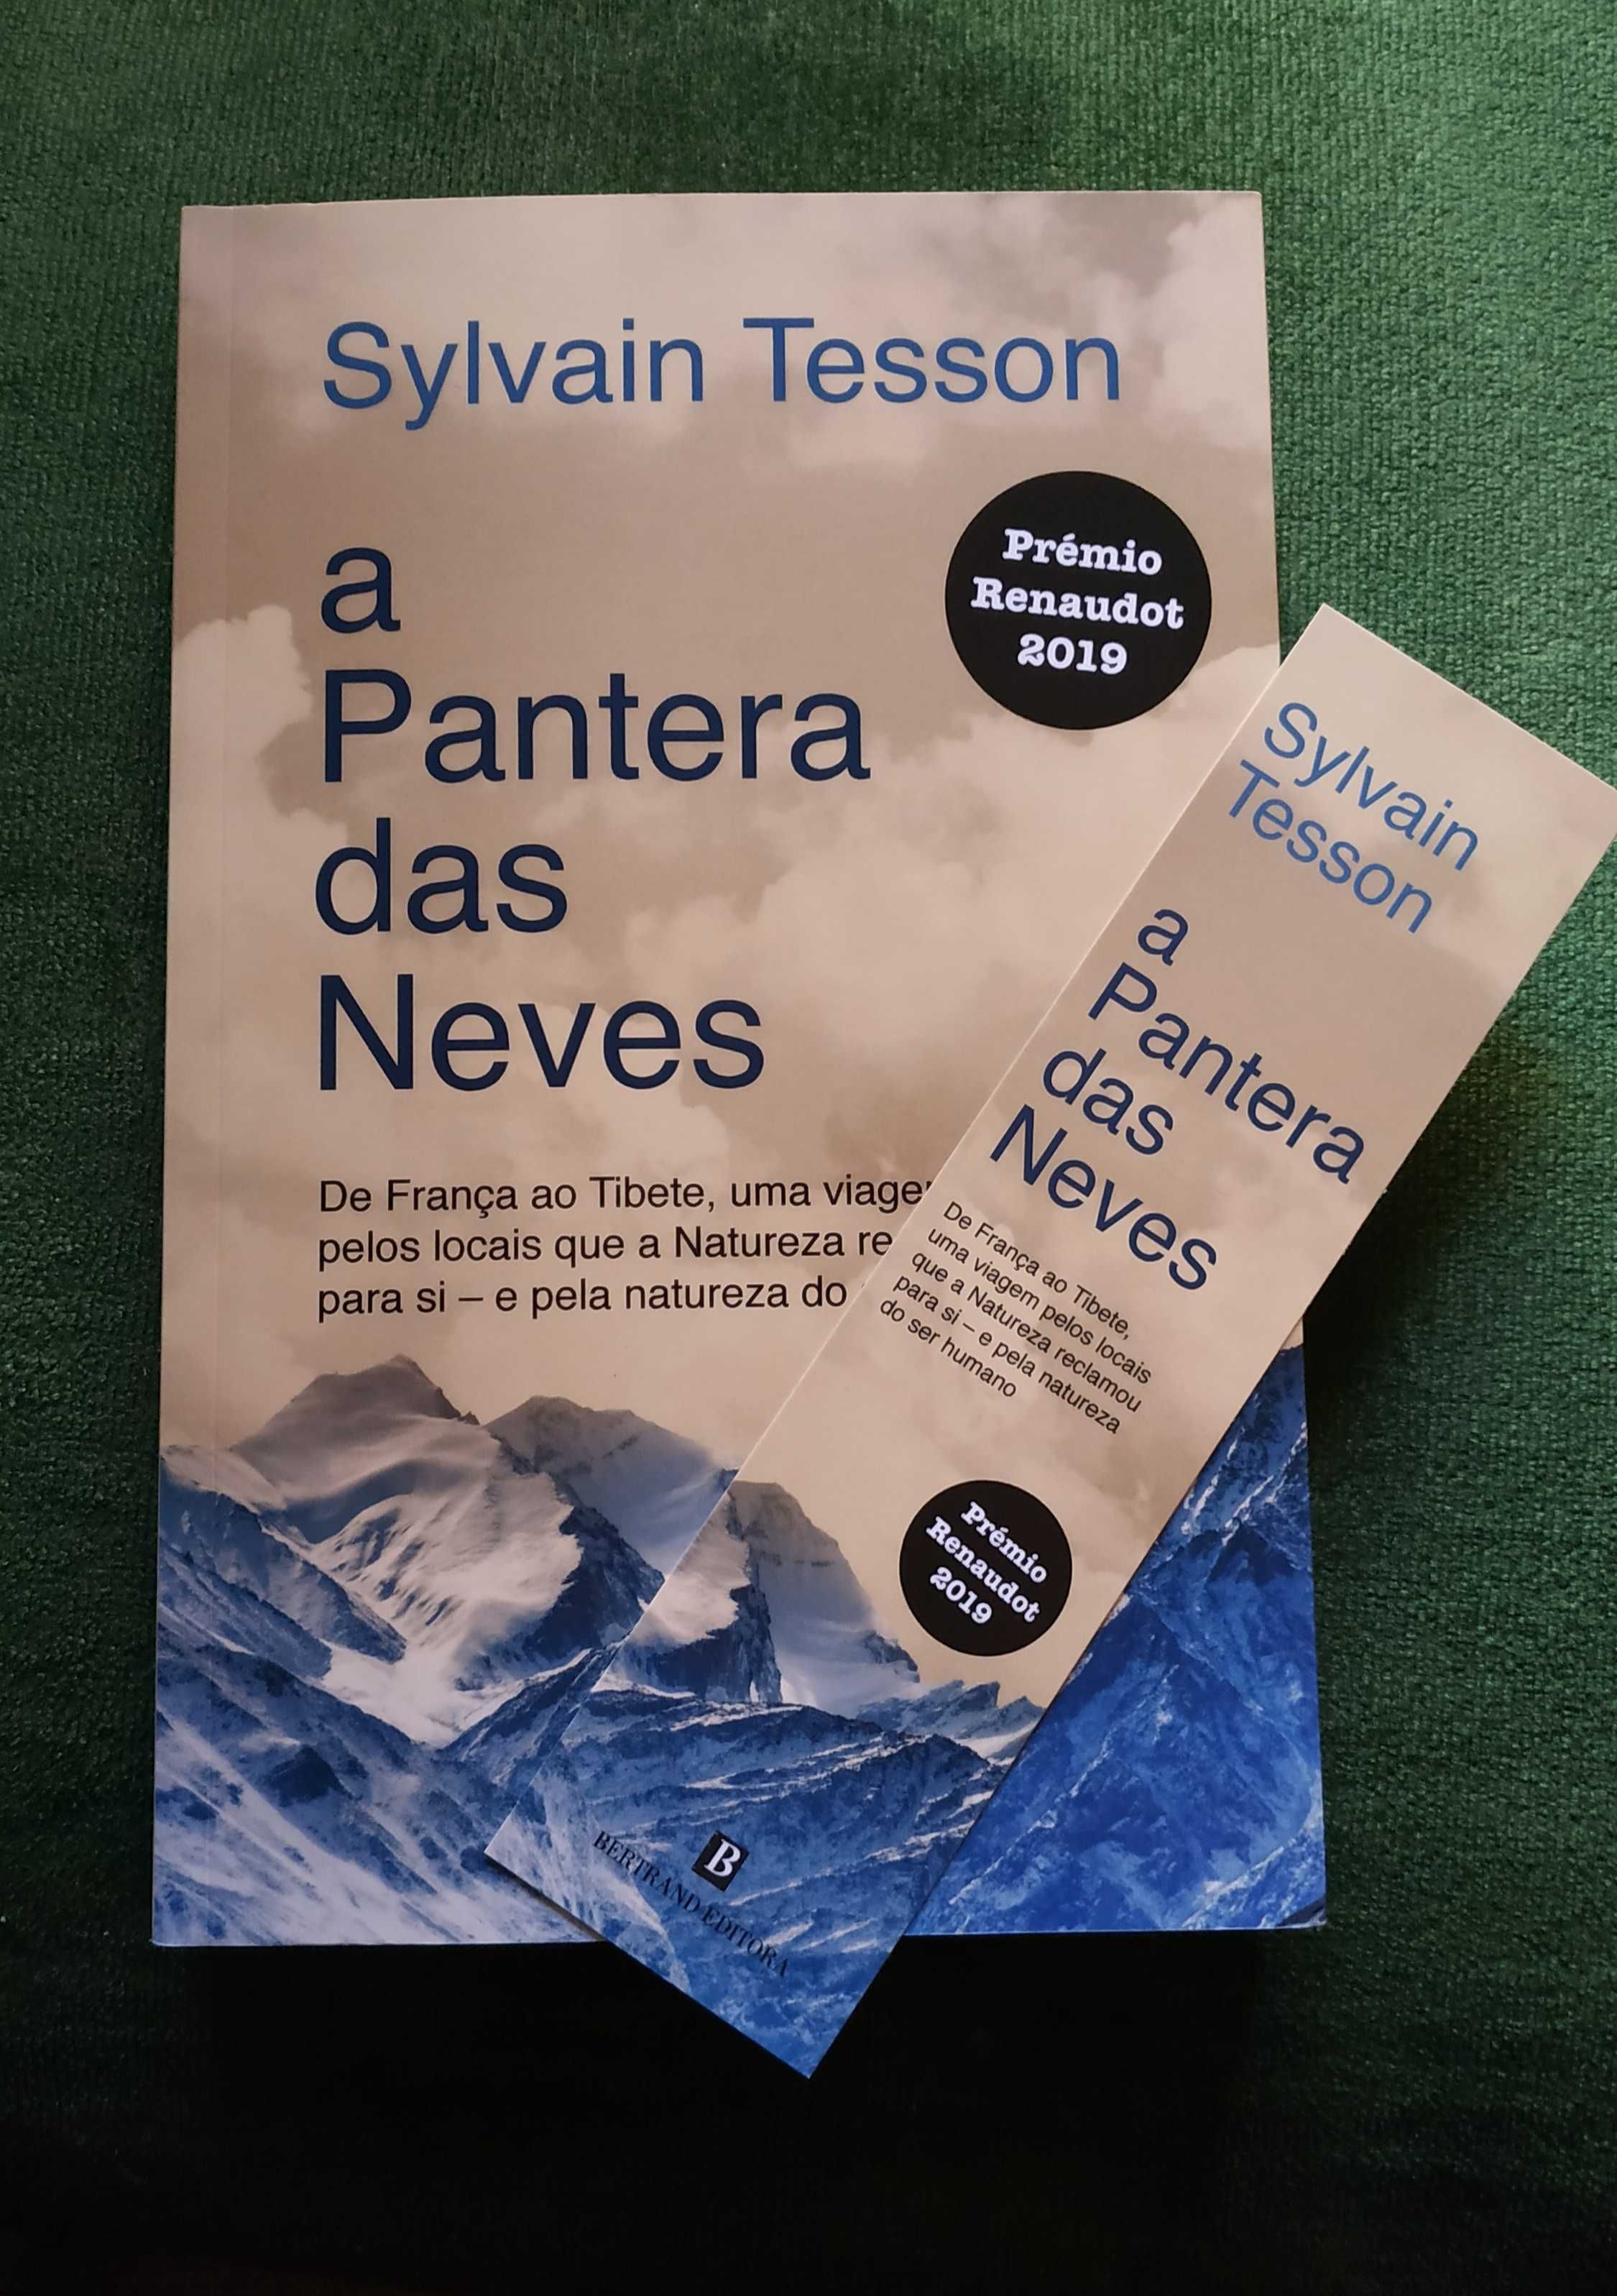 Livro A Pantera das Neves (Sylvain Tesson)